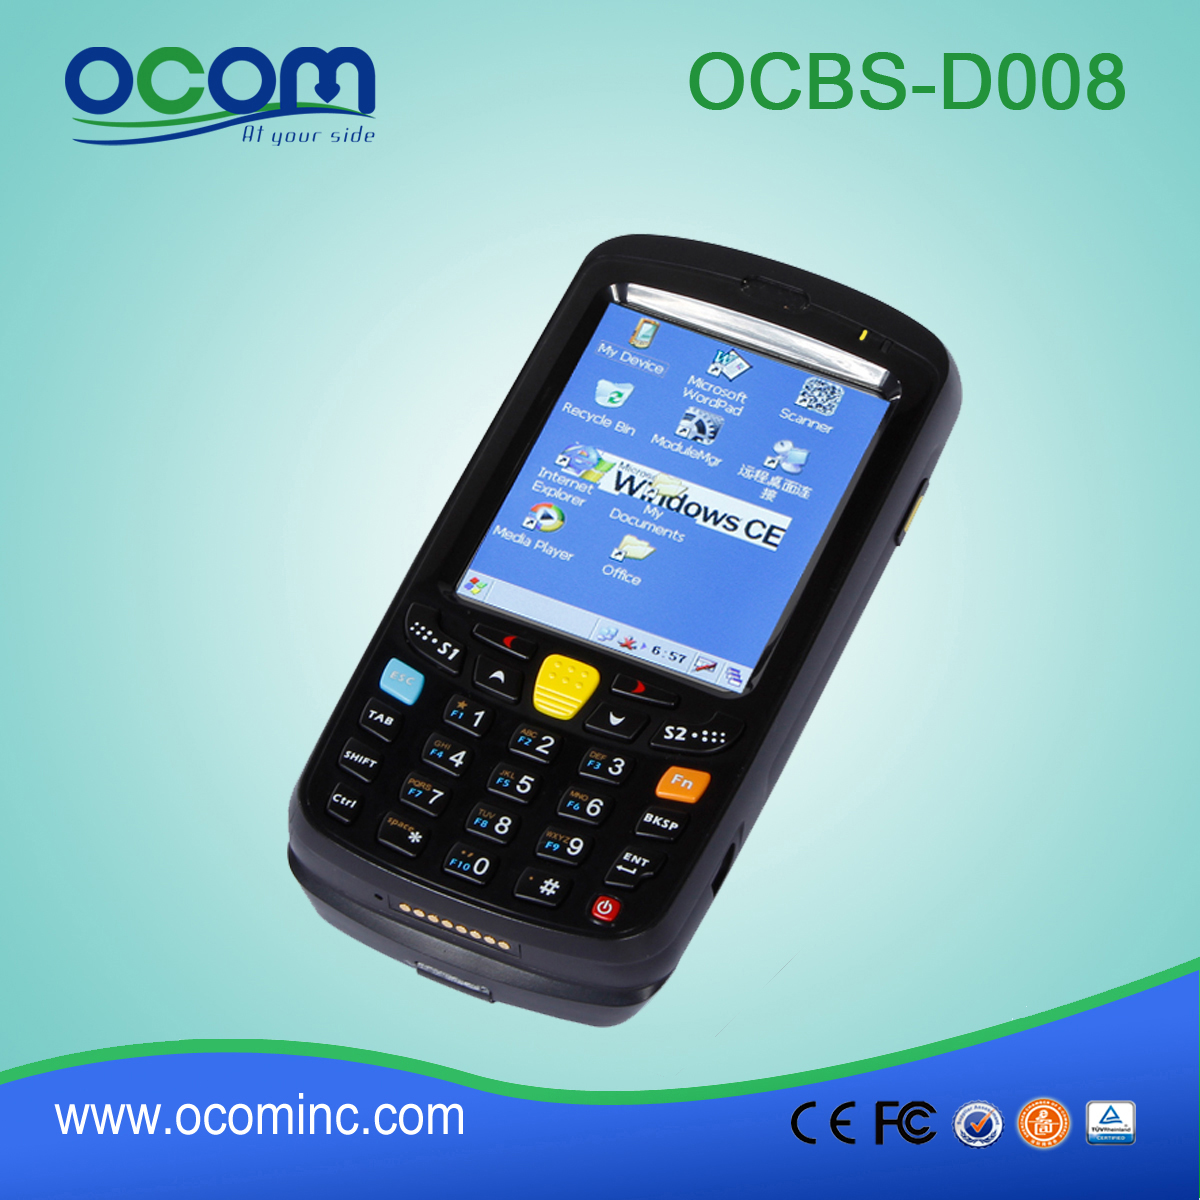 Πολυλειτουργικό WiFi Handheld Ανθεκτική Δεδομένων Συλλέκτης-OCBs-D008